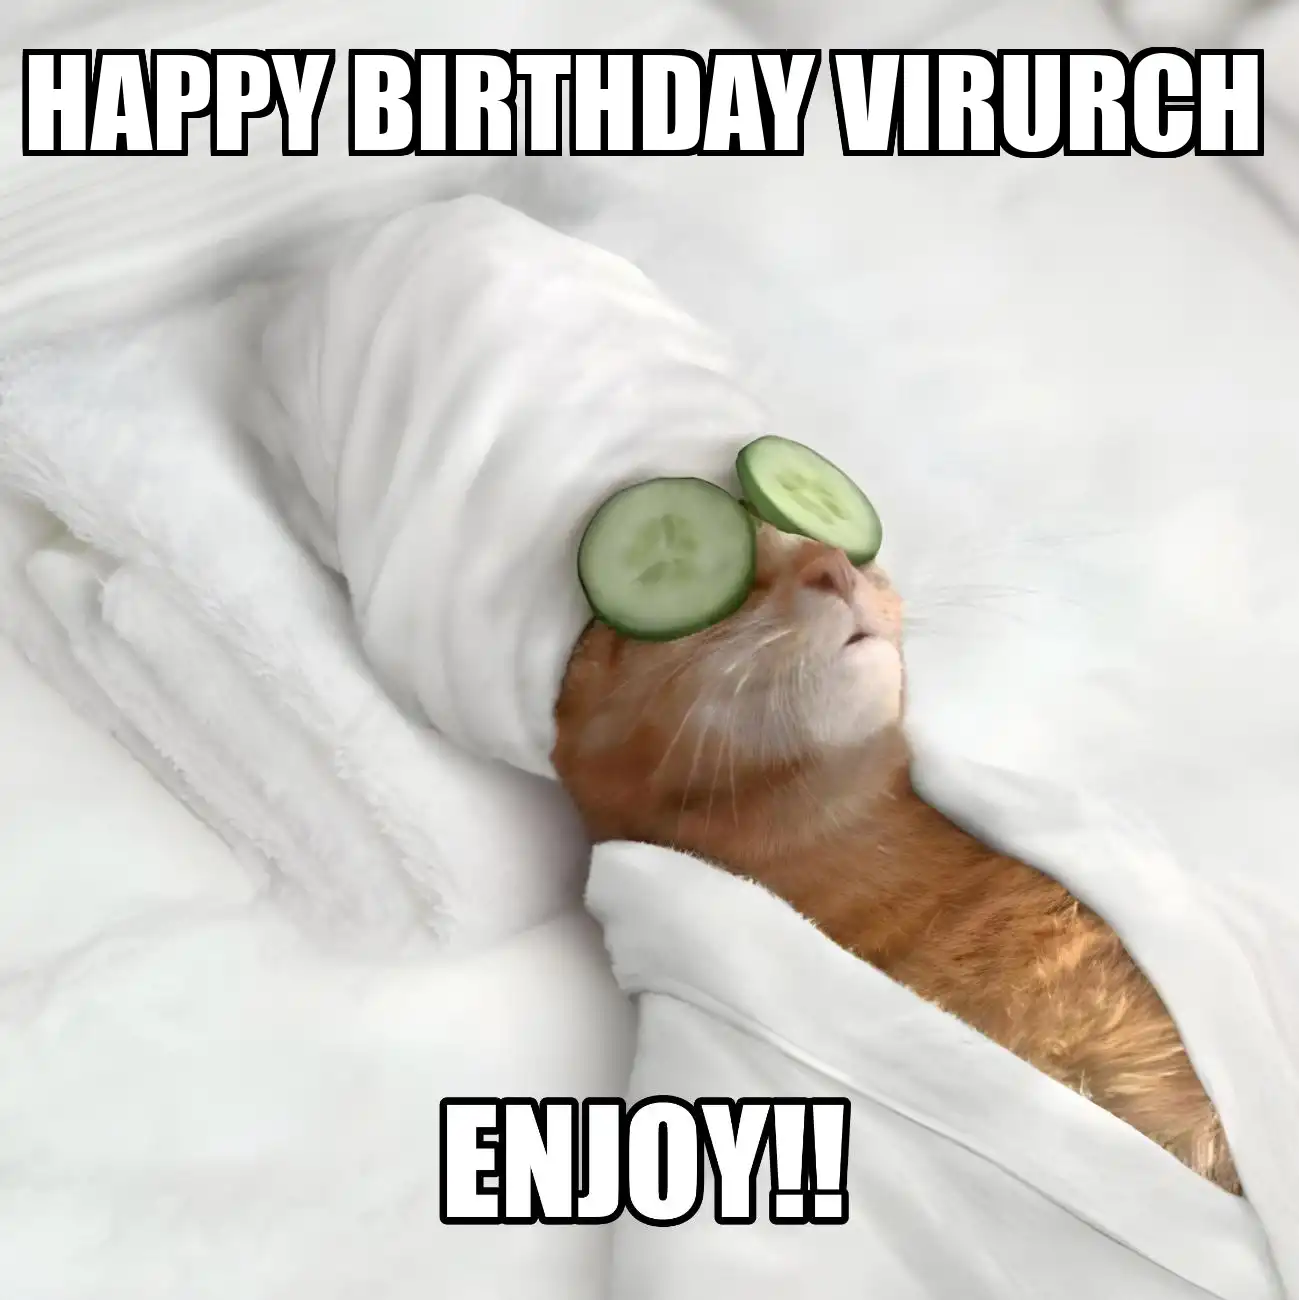 Happy Birthday Virurch Enjoy Cat Meme